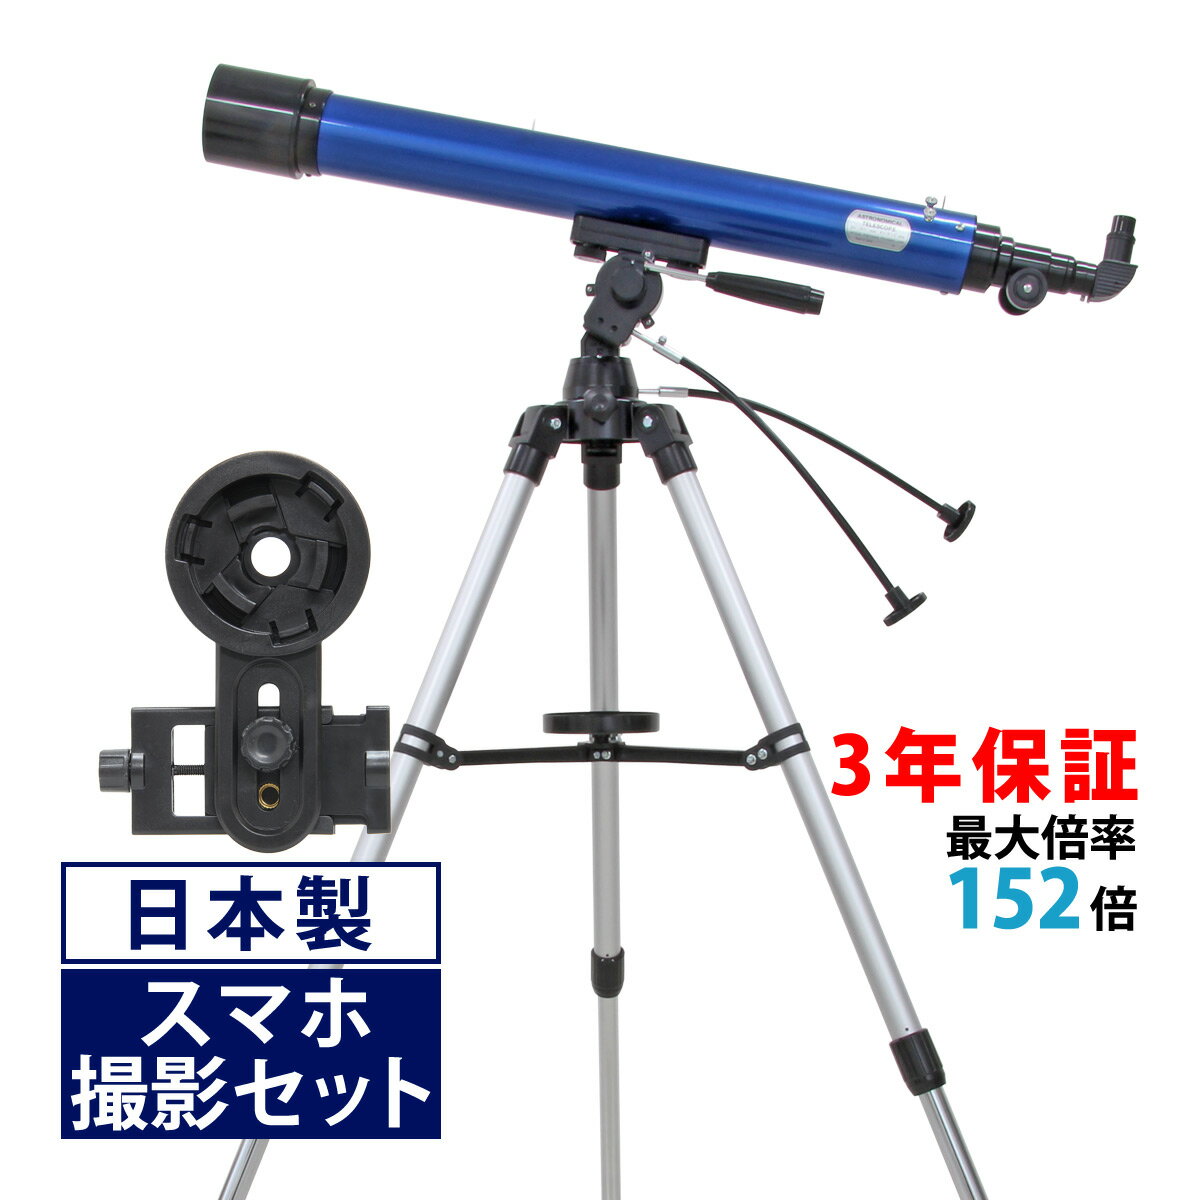 天体望遠鏡 スマホ 撮影 初心者 リゲル80 天体望遠鏡セット 日本製 80mm 口径 望遠鏡 天体 小学生 携帯 ブルー 天体ガイドブック付き 子供用に最適 初心者に向け本気で作られた 屈折式 スマー…